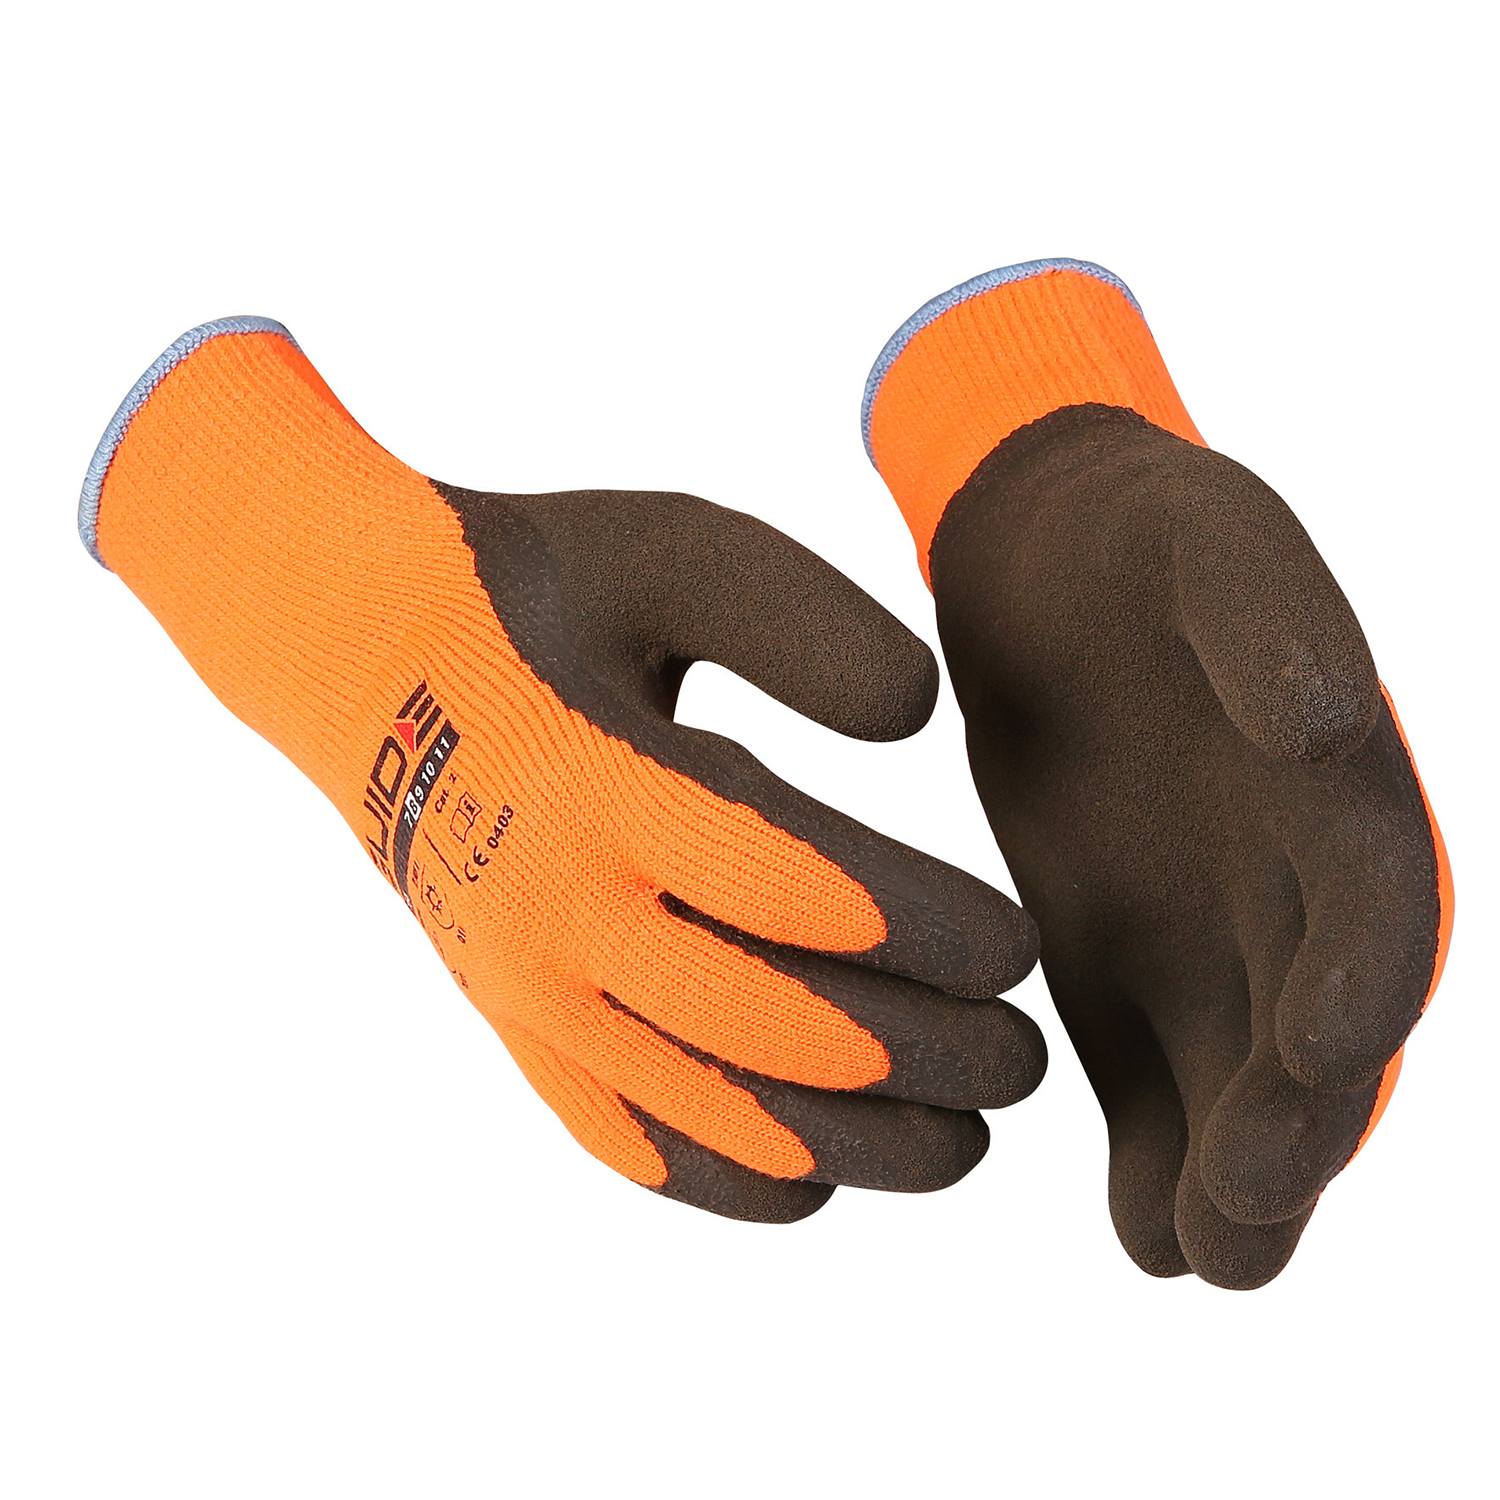 Мужские рабочие перчатки. Перчатки Guide 158. Pv600 перчатки. Stayer 67736 перчатки. Перчатки защитные Skydda.